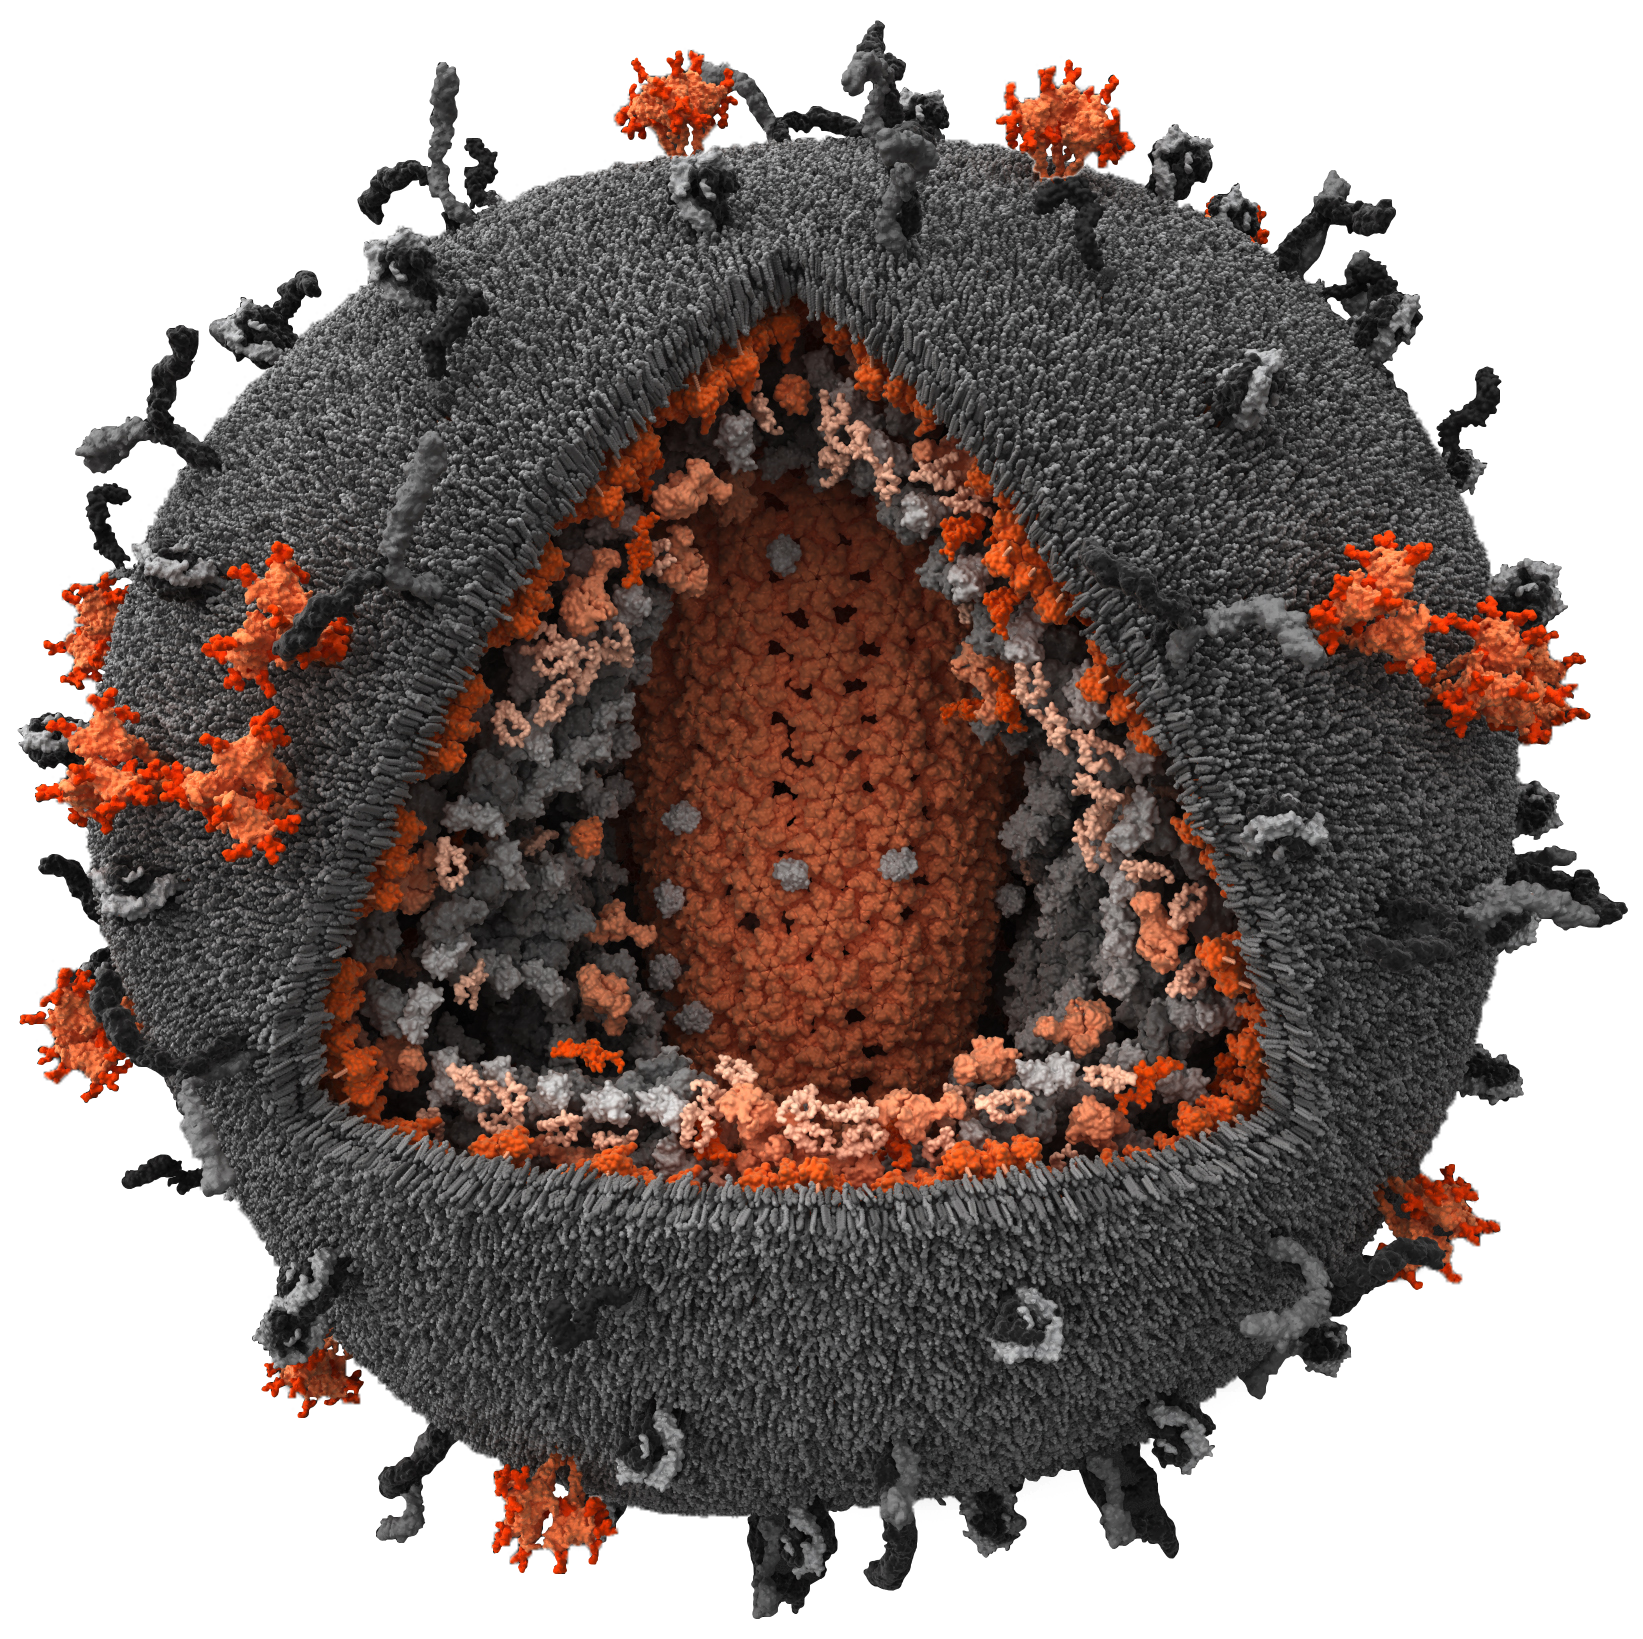 VIH e o sistema imunitário